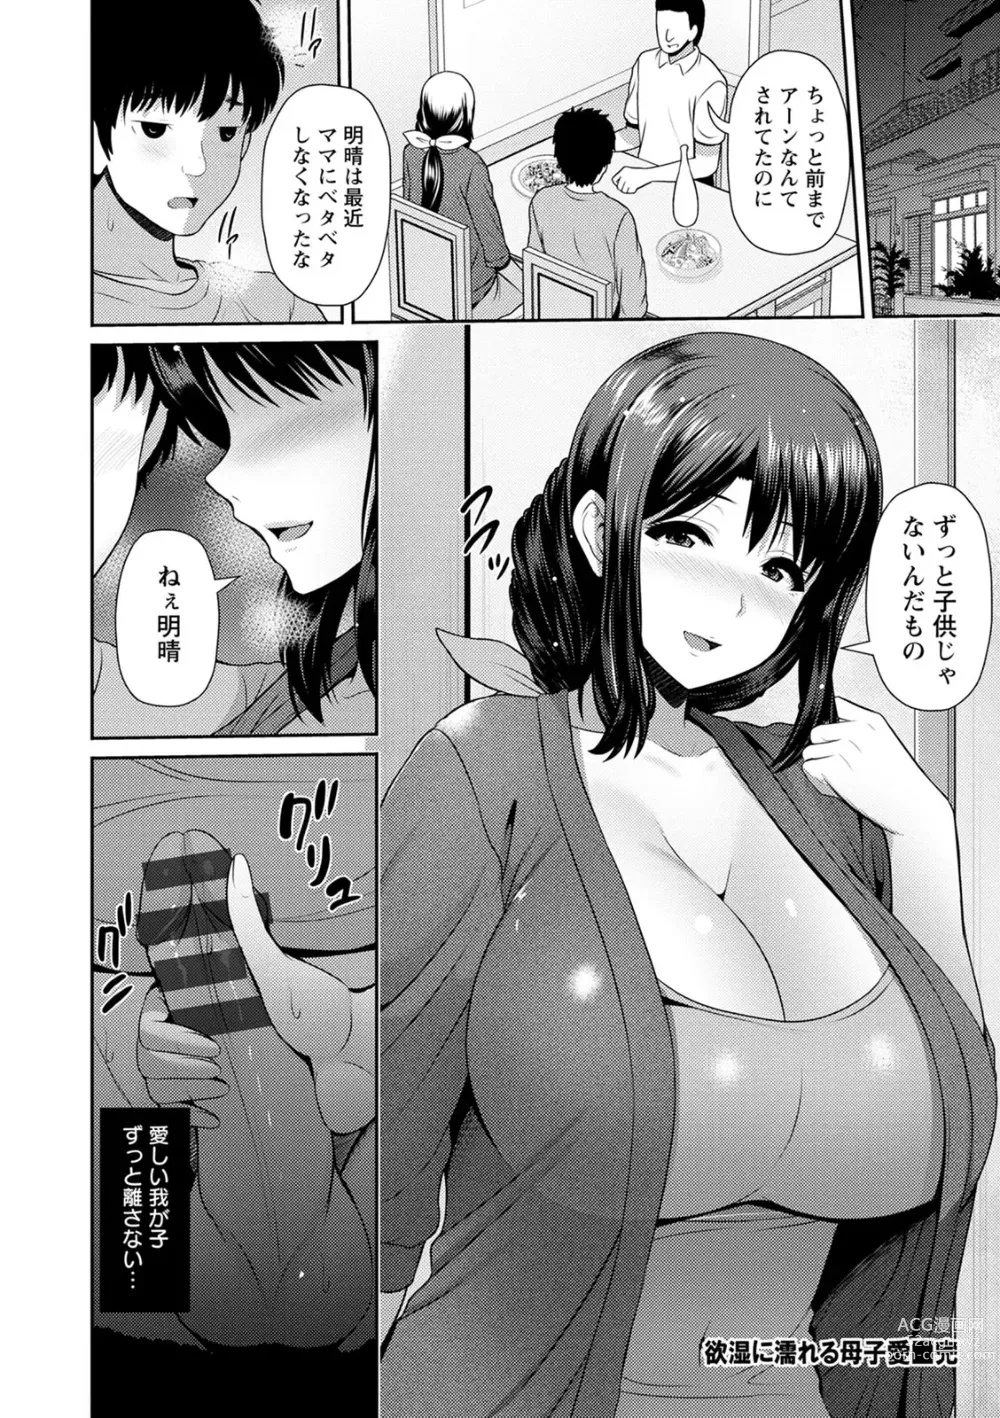 Page 24 of manga Shitsu Raku En